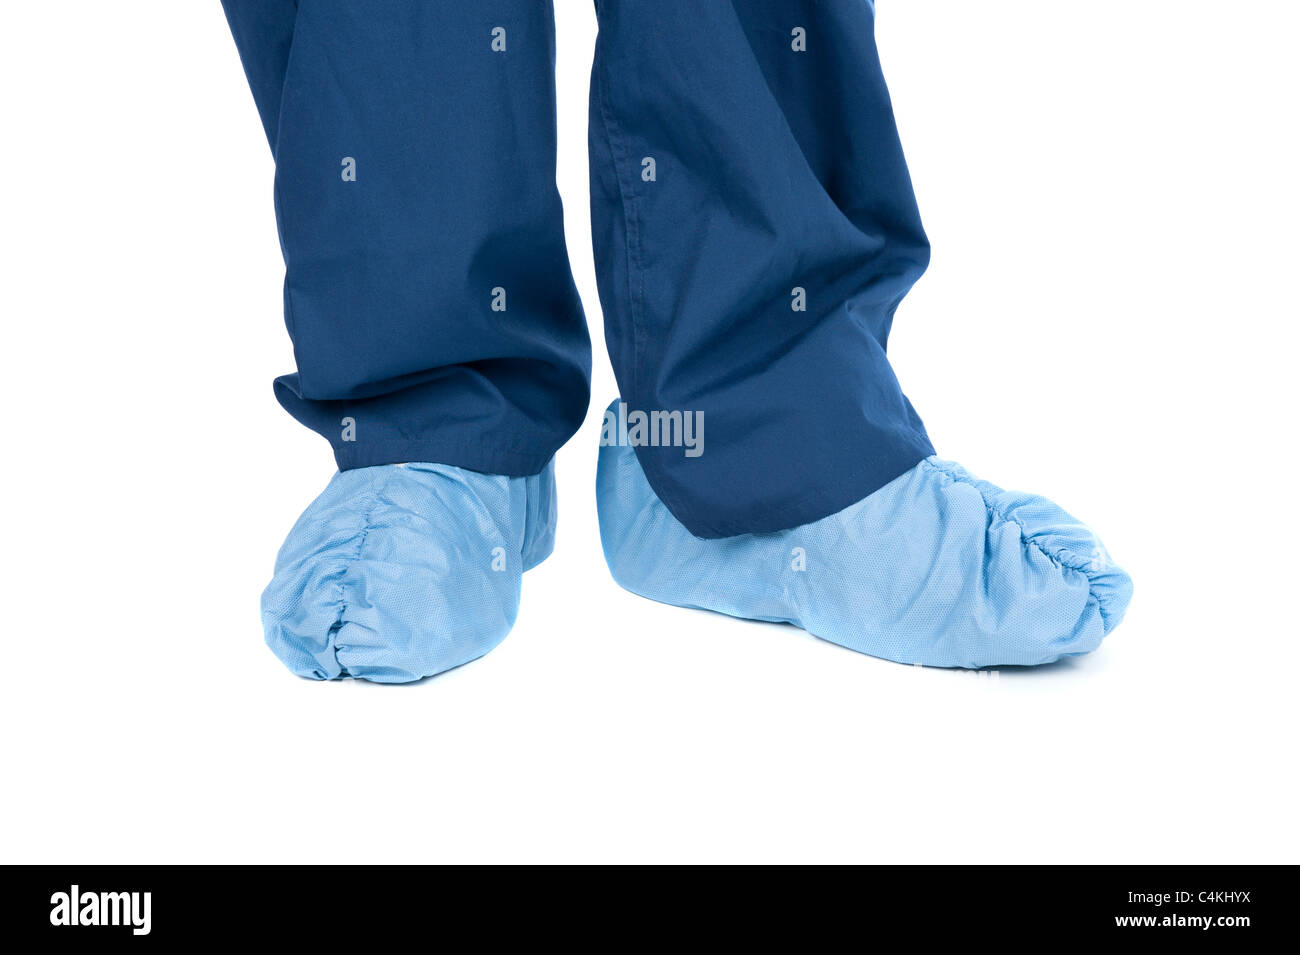 Un médico usando protectores de pies y matorrales médicos coberturas. Foto de stock